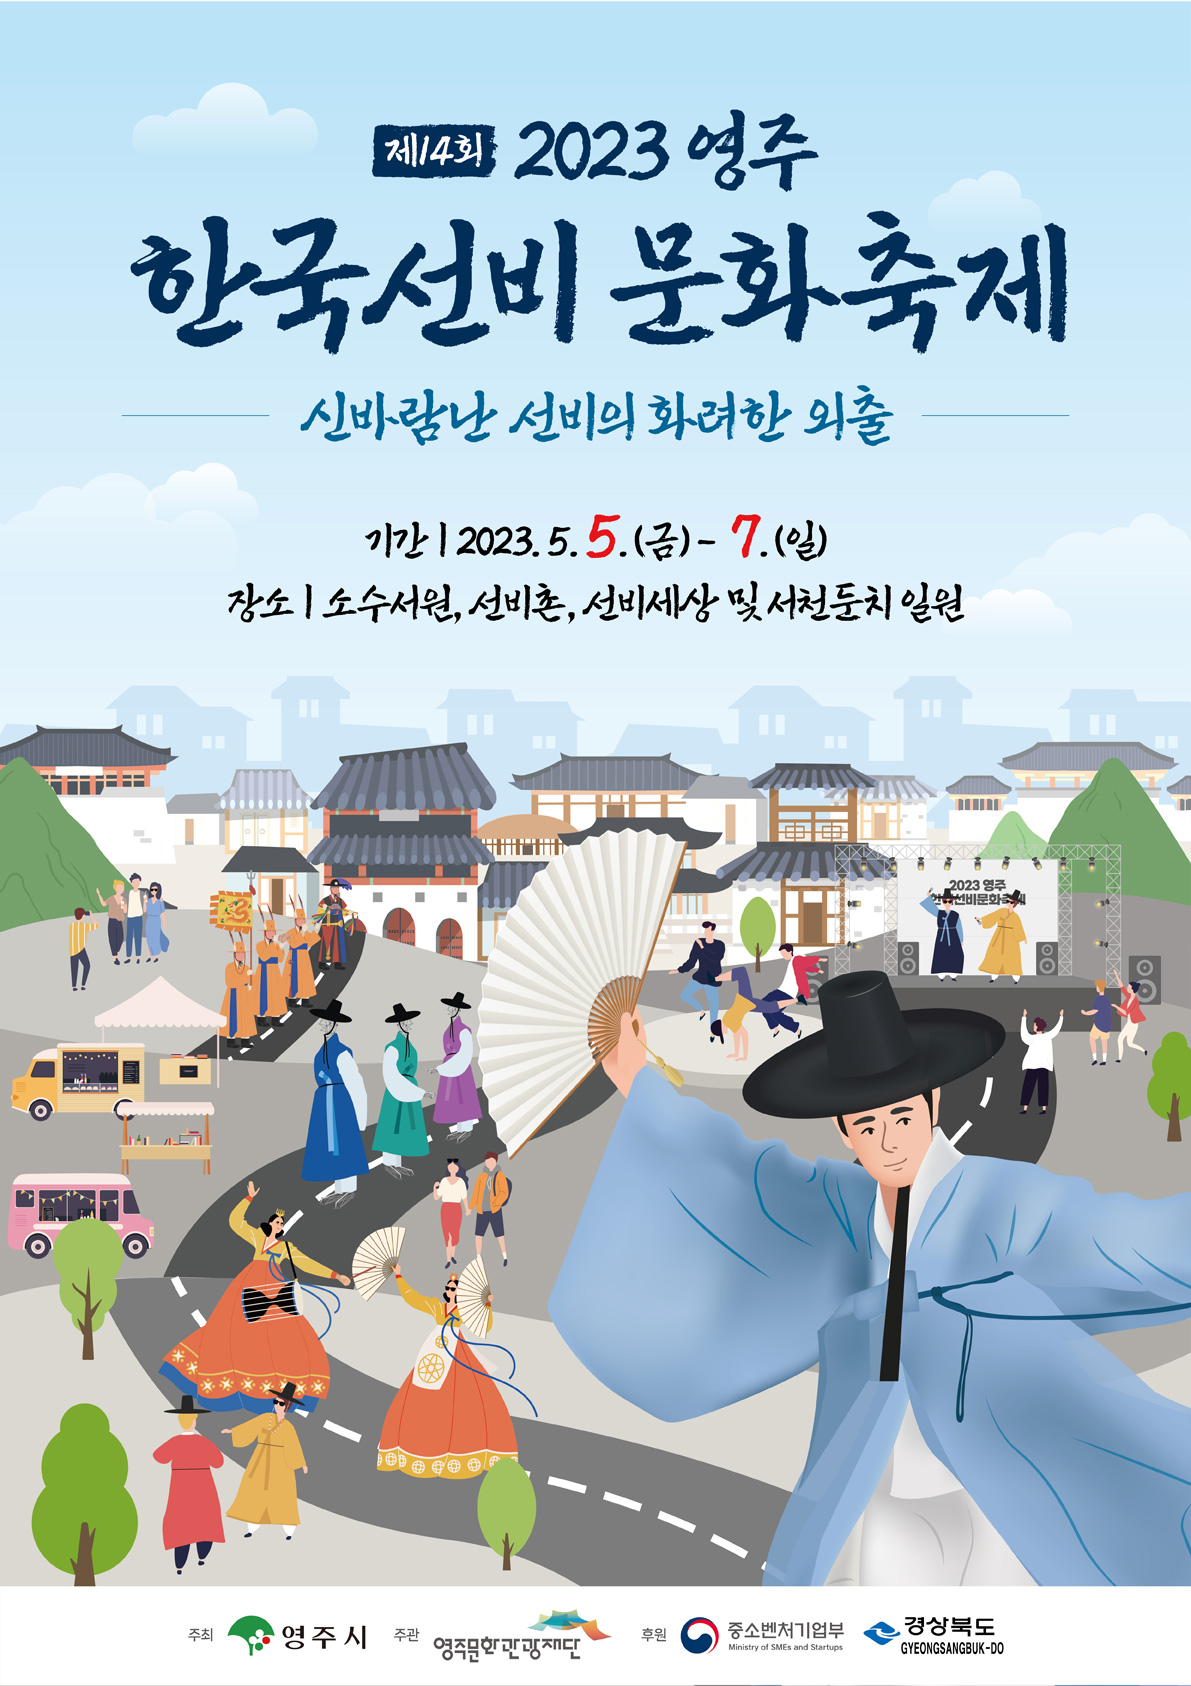 영주 한국선비 문화축제